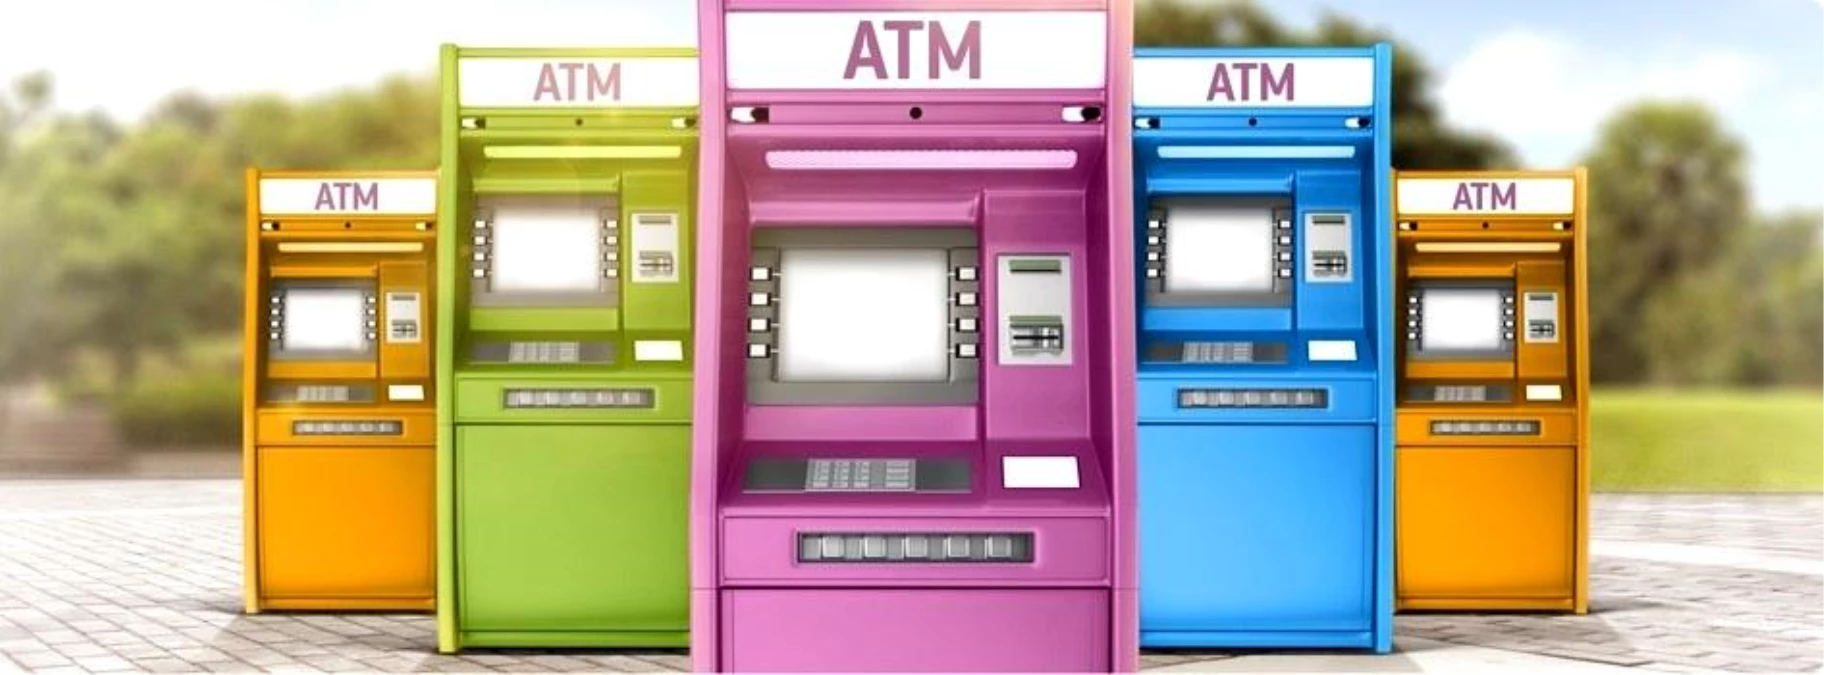 Marmaris Belediye Meclisi, özel mülk alanlarına ve binaların çekme mesafelerine ATM ve şarj istasyonu gibi ünitelerin konulmasını yasakladı